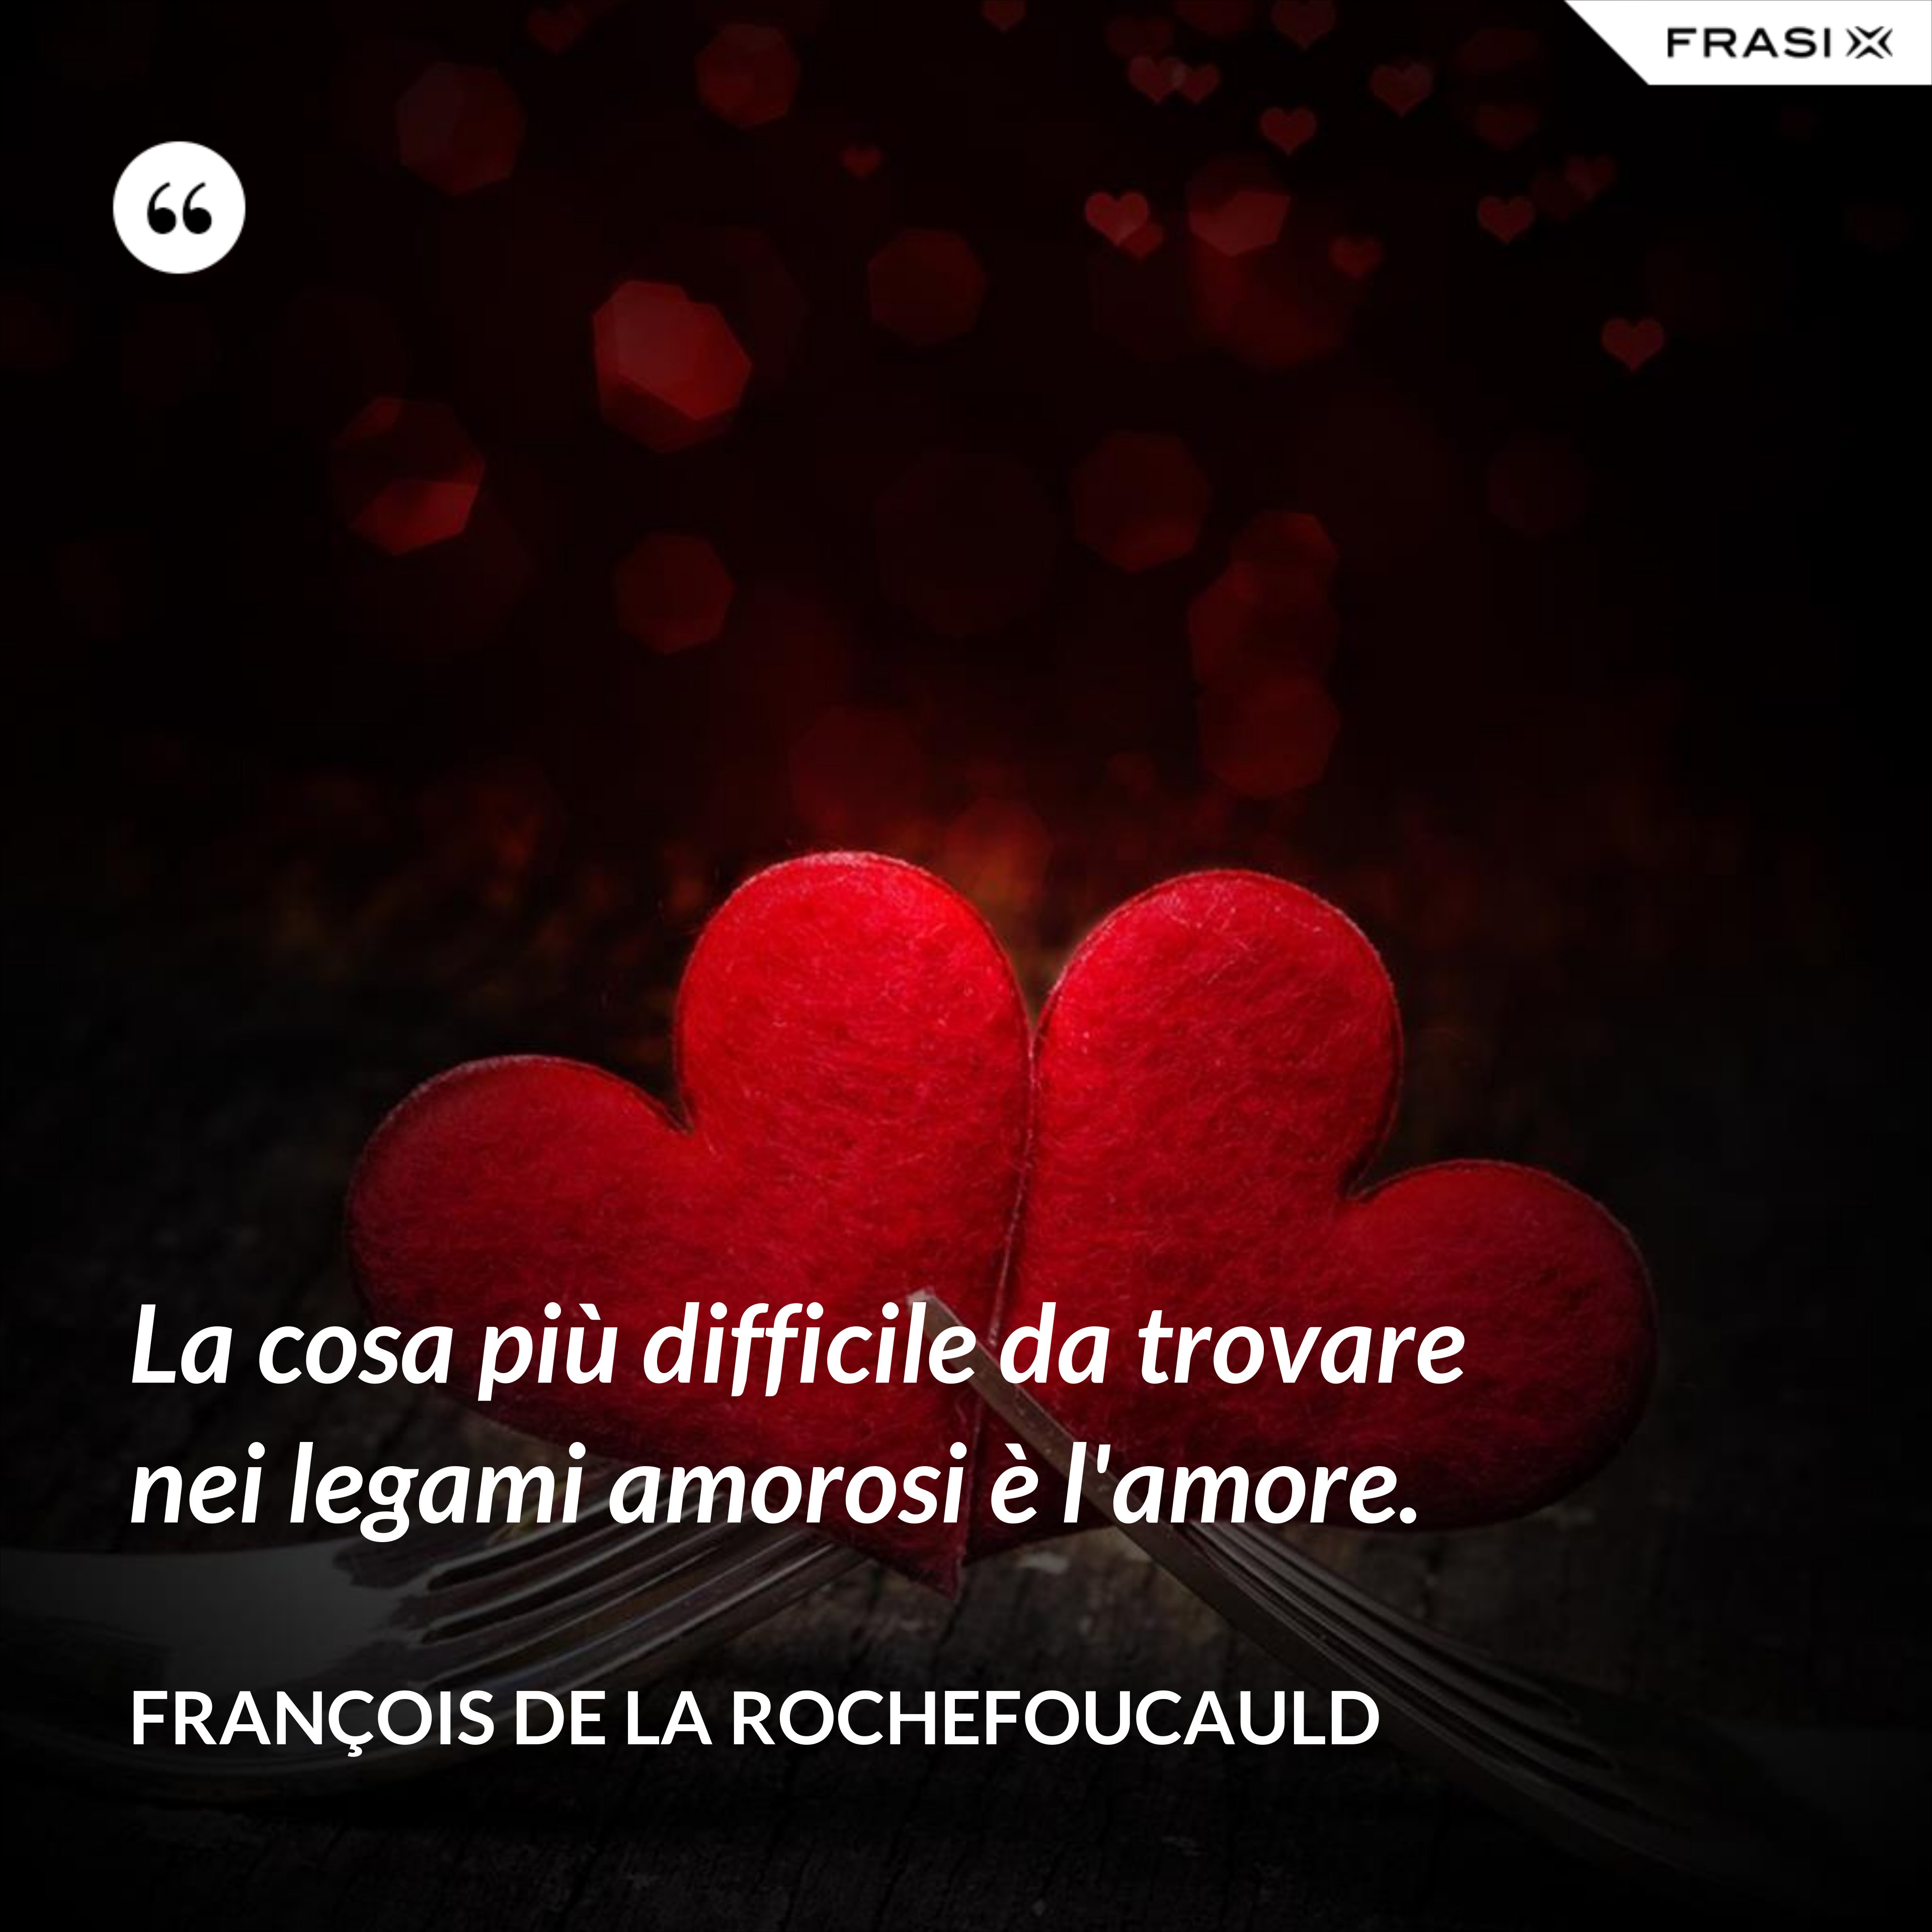 La cosa più difficile da trovare nei legami amorosi è l'amore. - François de La Rochefoucauld